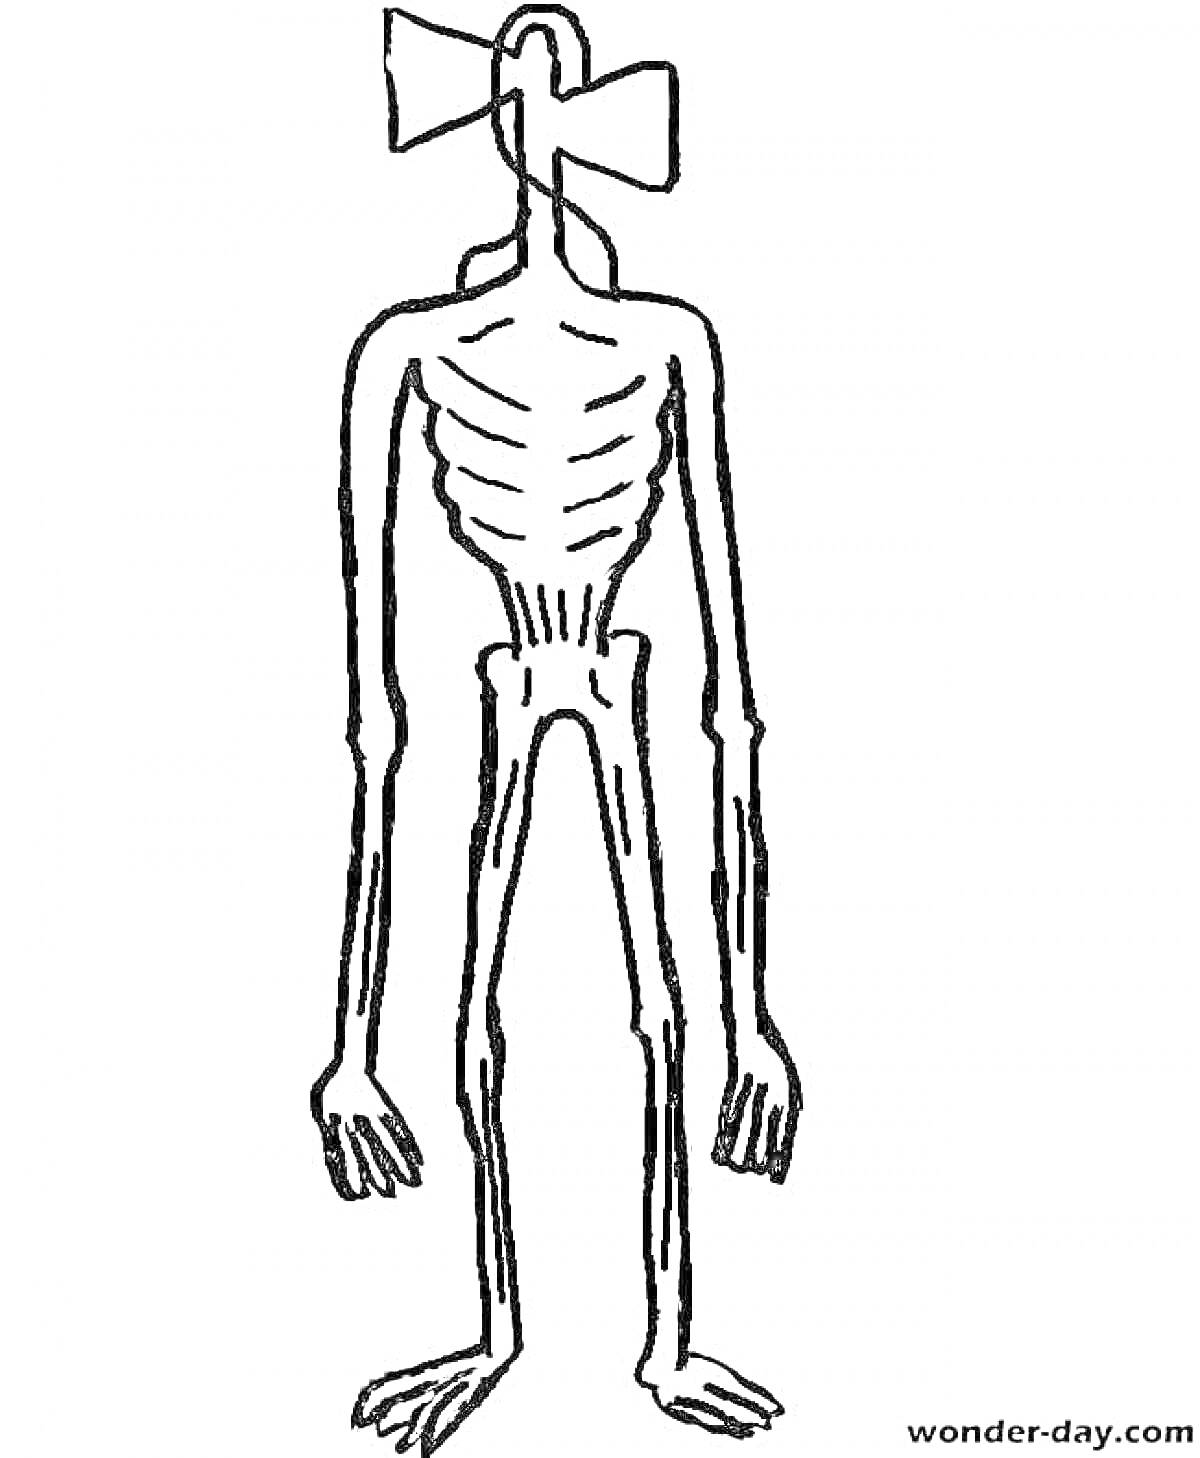 Раскраска Сиреноголовый с вытянутыми руками и ногами, анатомические особенности с ребрами